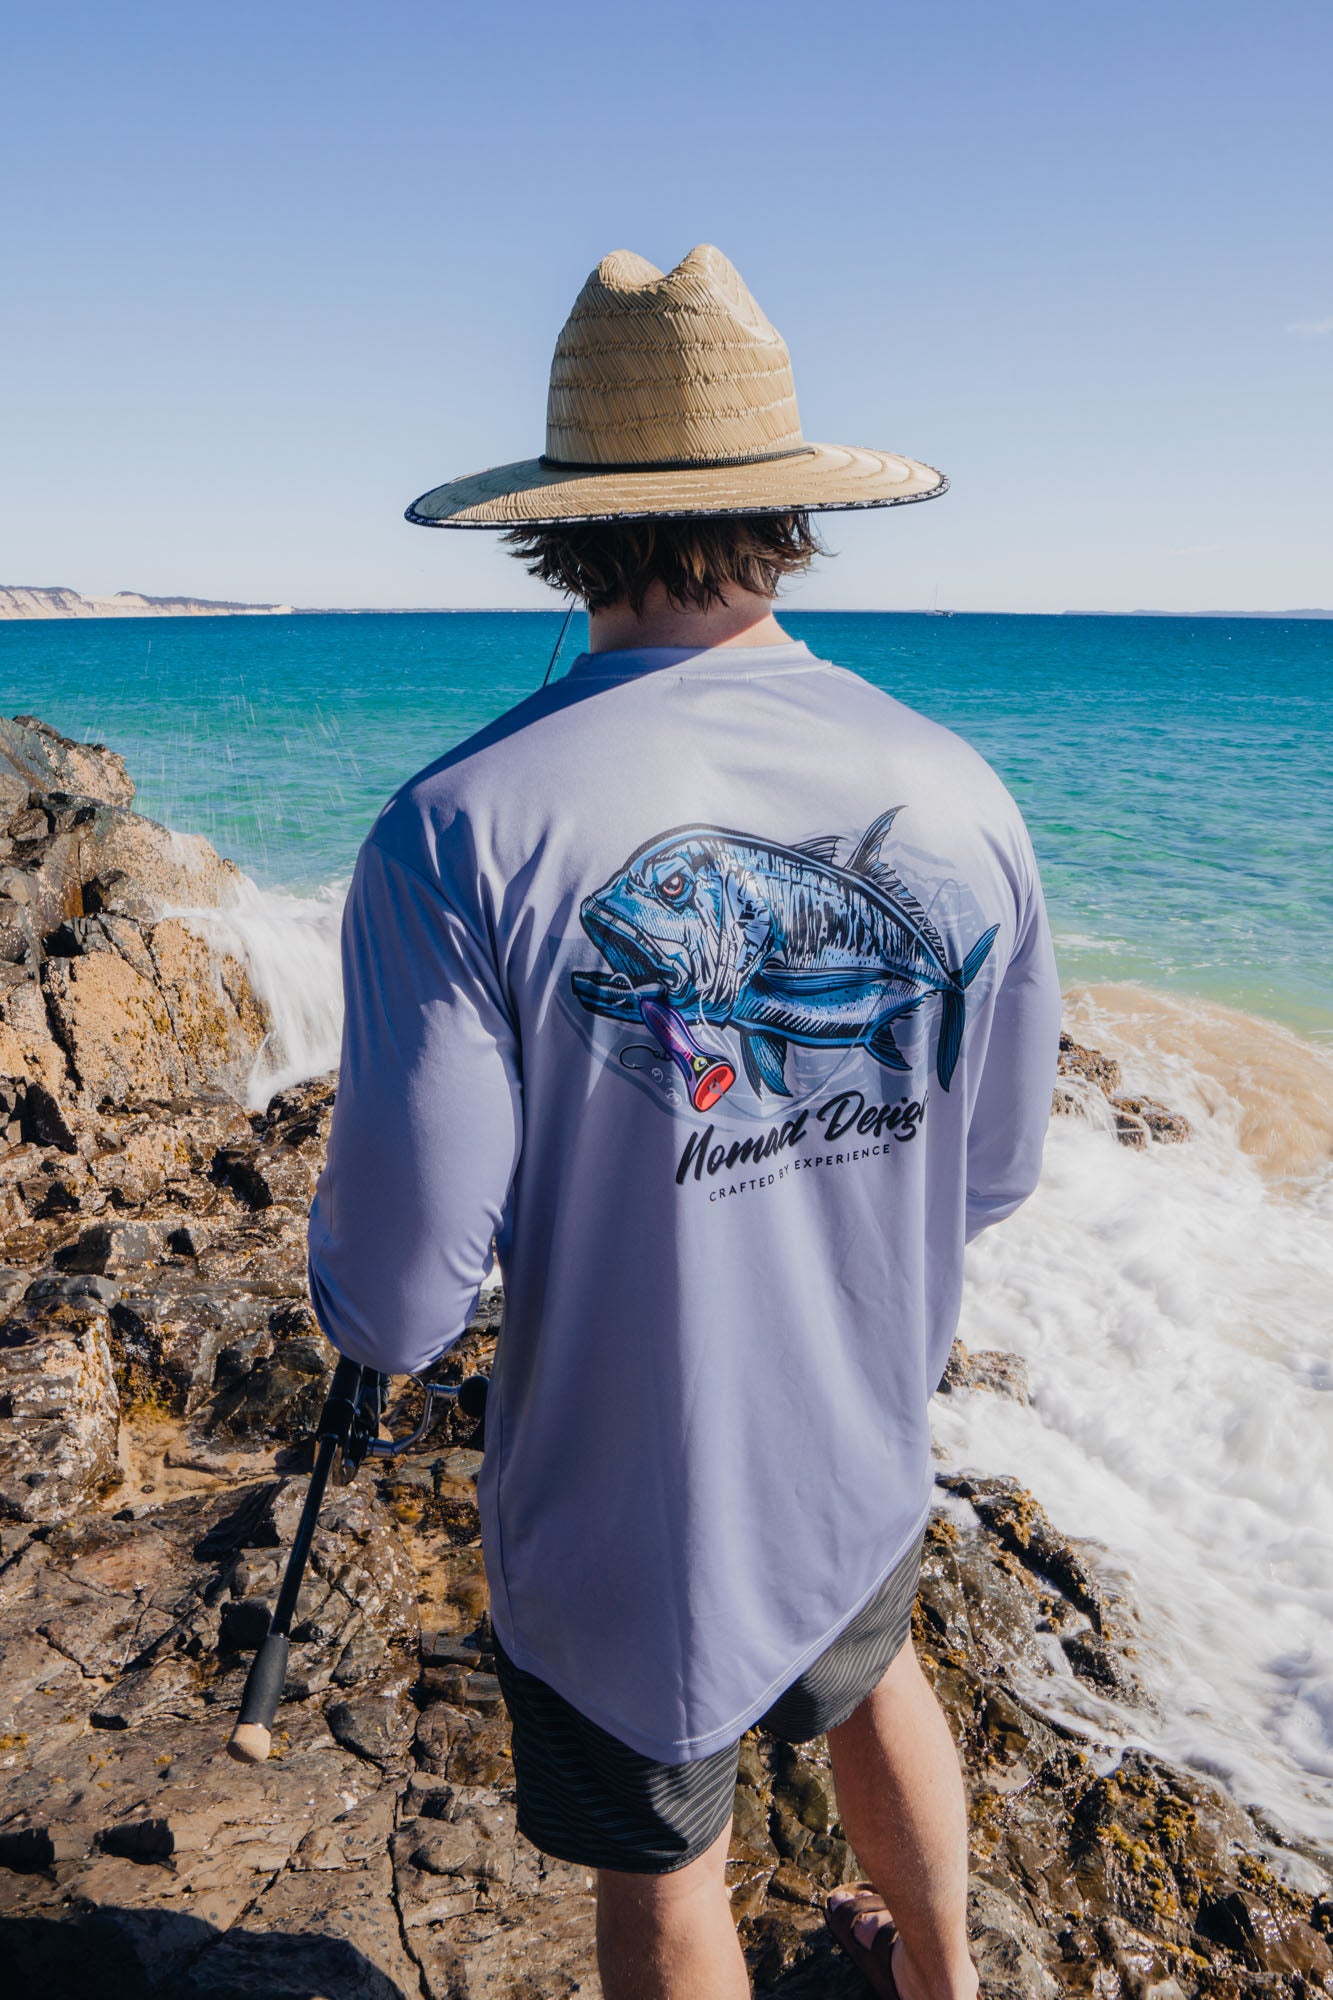 Tech Fishing Shirt - GT Hook Up